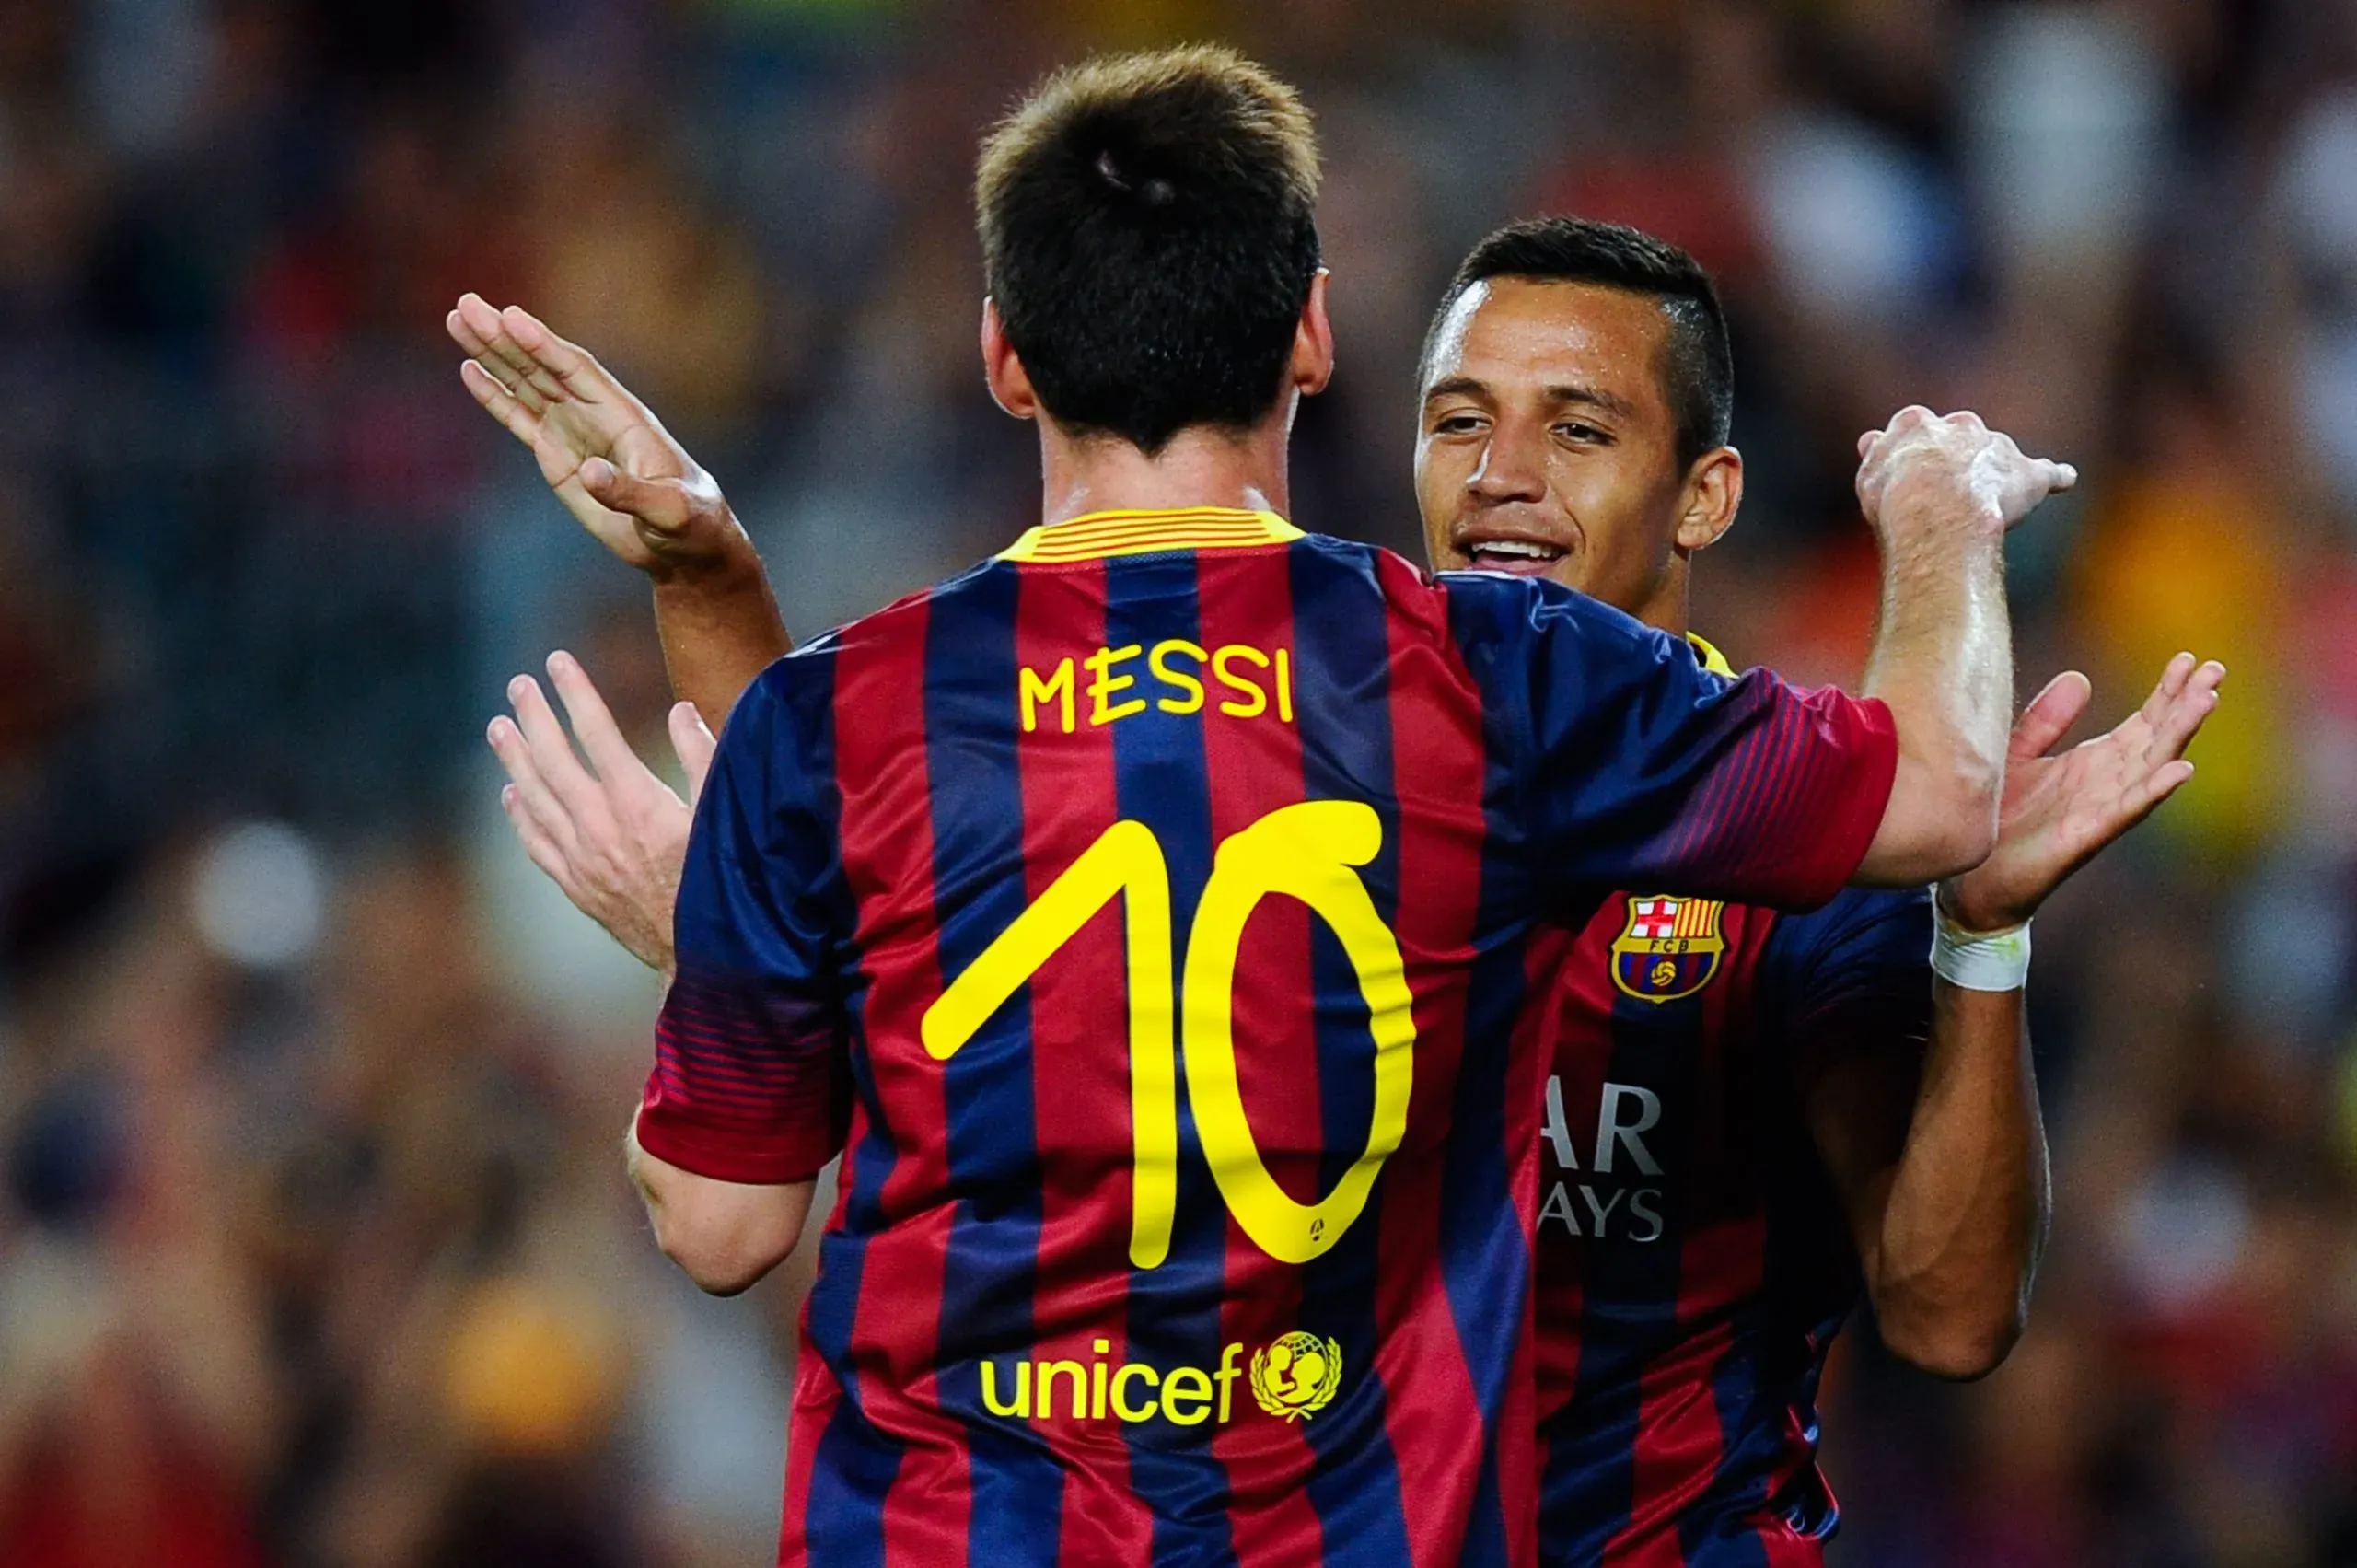 Alexis Sánchez e Lionel Messi comemorando gol na época em que jogavam no Barcelona. (Photo by David Ramos/Getty Images)